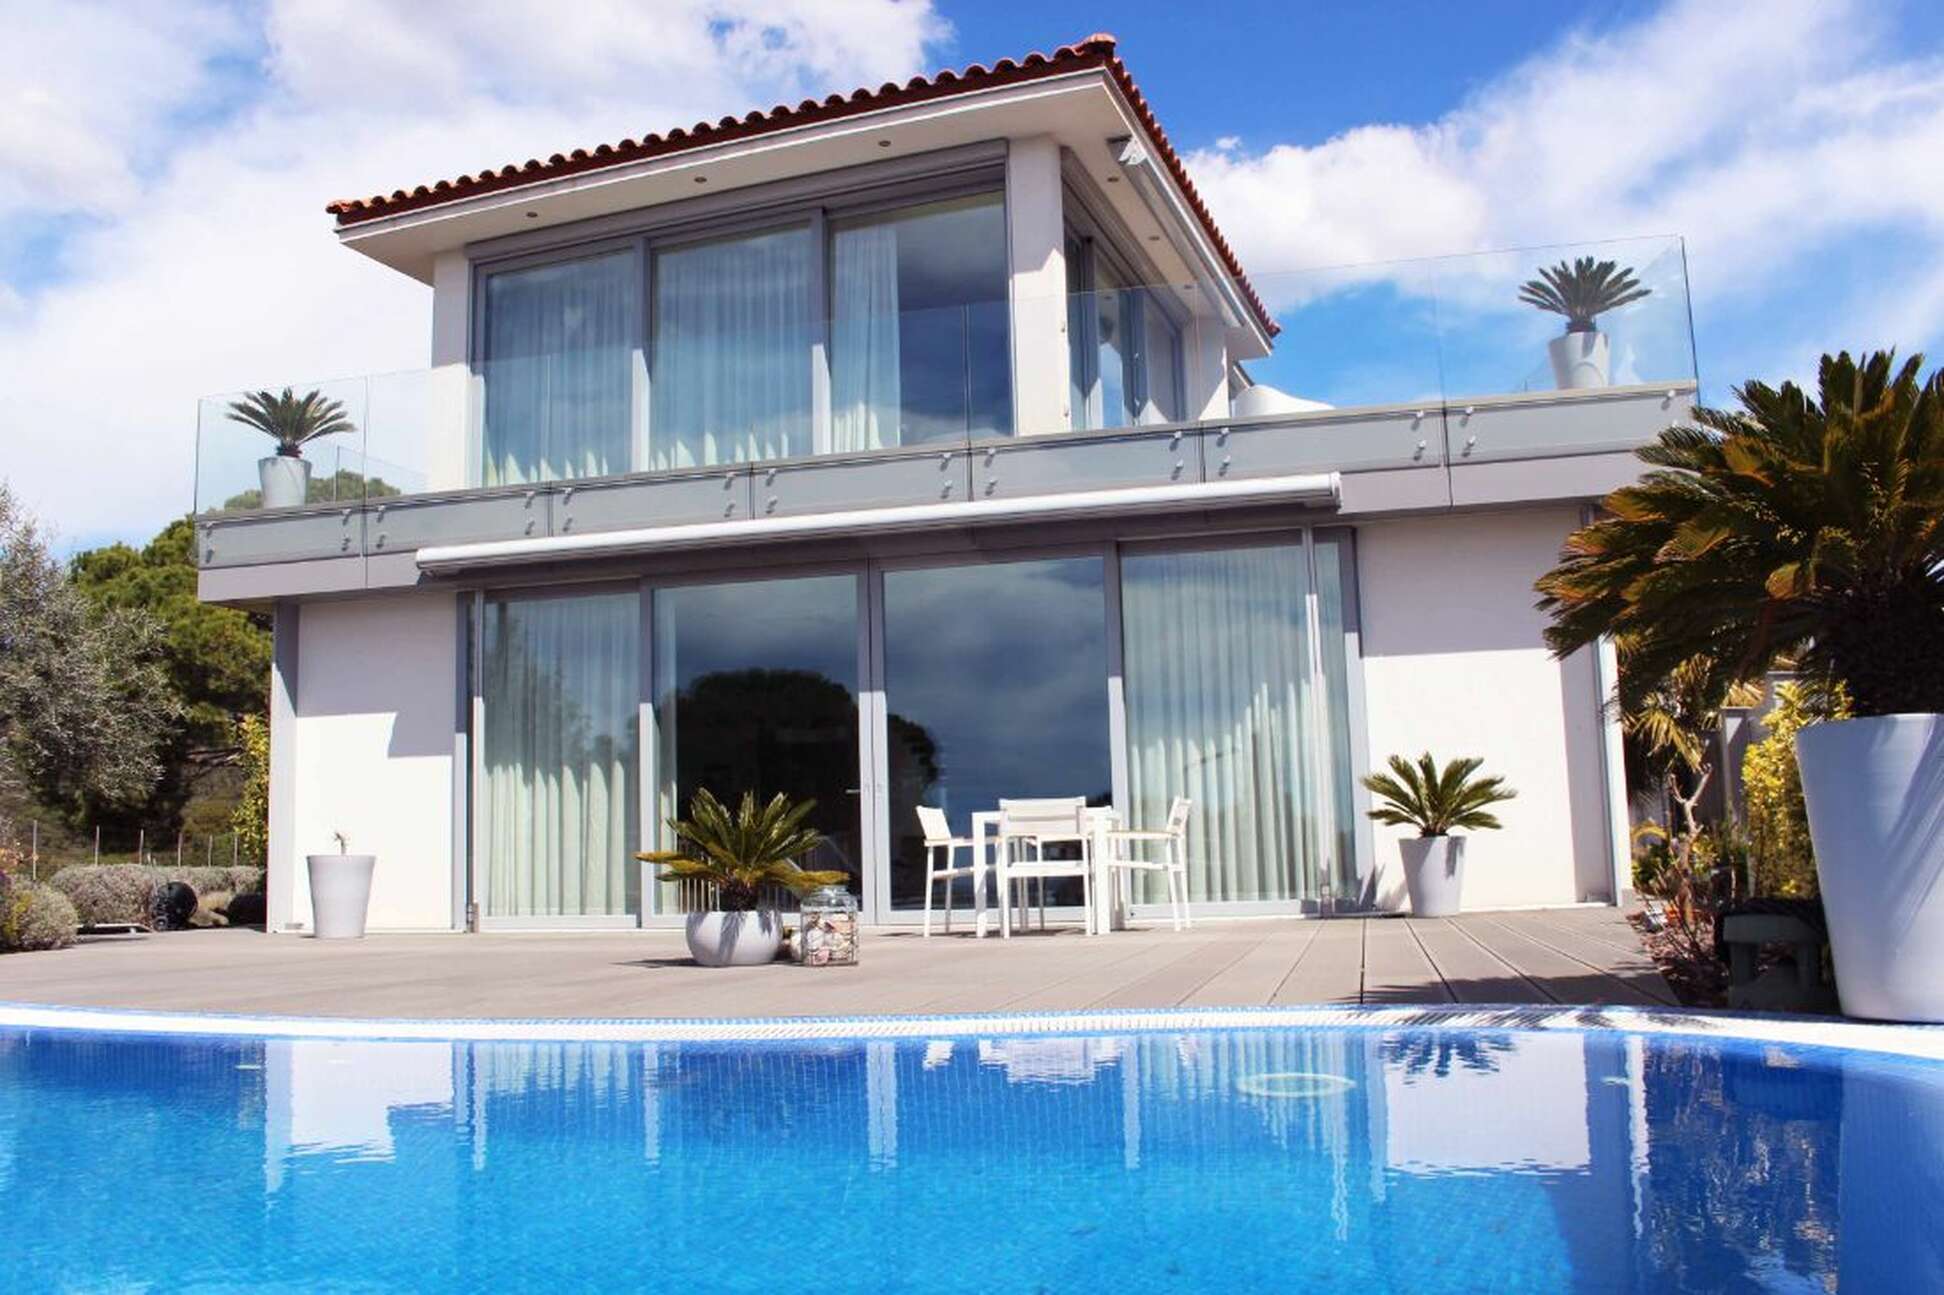 Exclusiva casa con impresionantes vistas al mar en Tossa de Mar, disponible ahora.